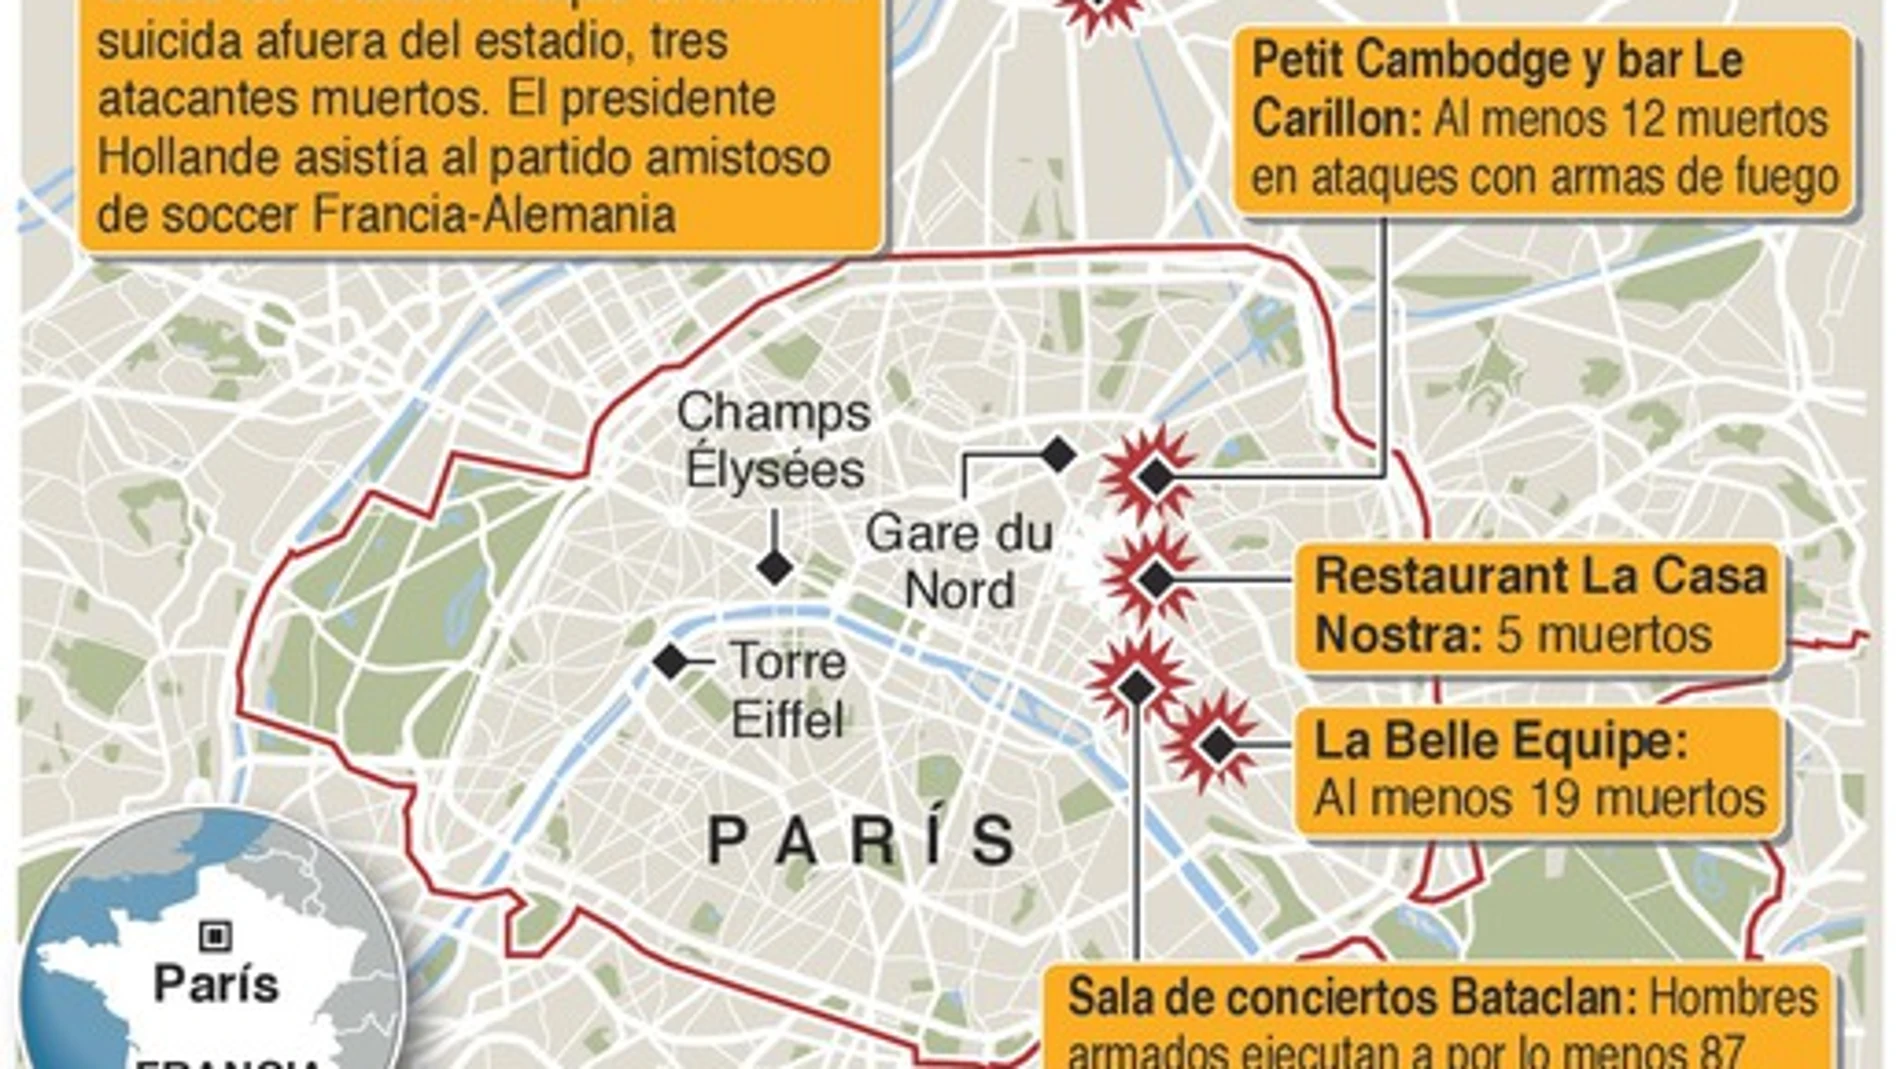 Así fueron los ataques en París: cronología de una pesadilla